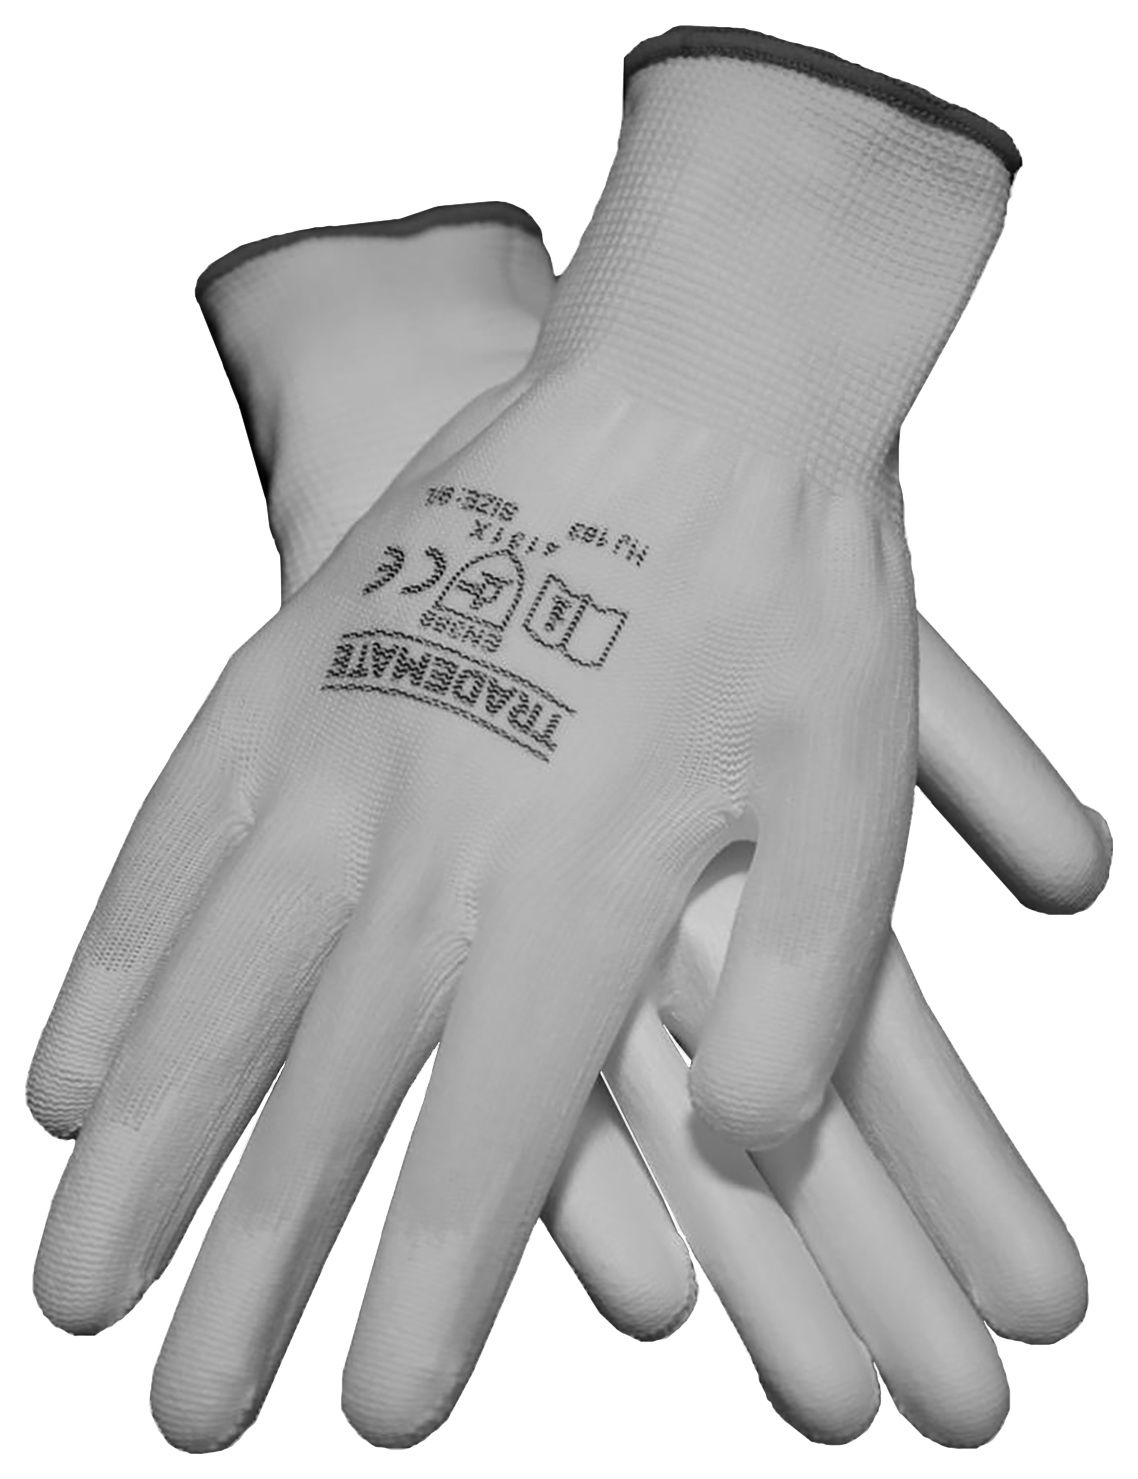 TRADEMATE Decorators Glove White - Size 9 (L)